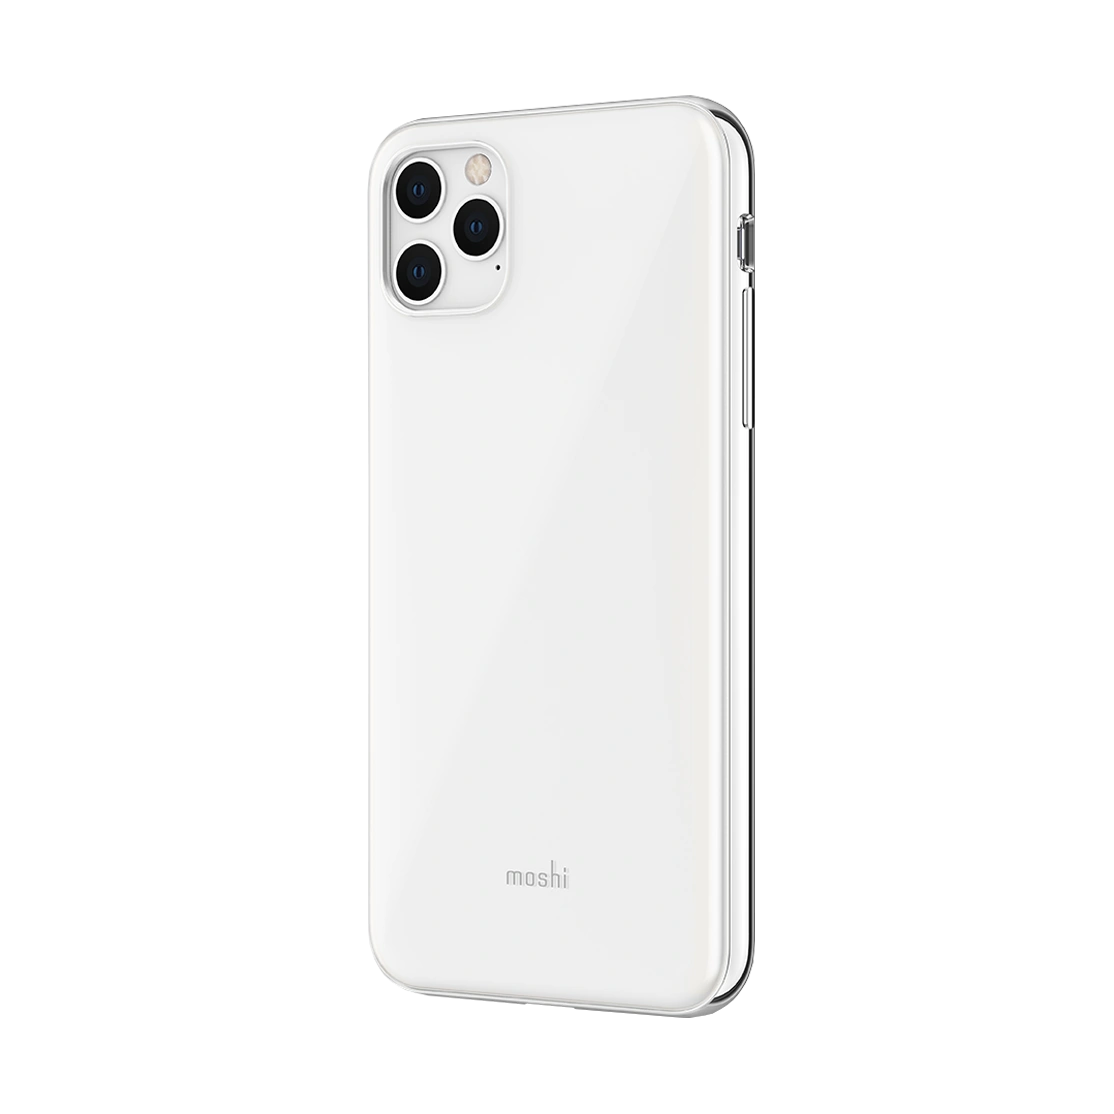 moshi-iglaze-case-for-iphone-11-pro